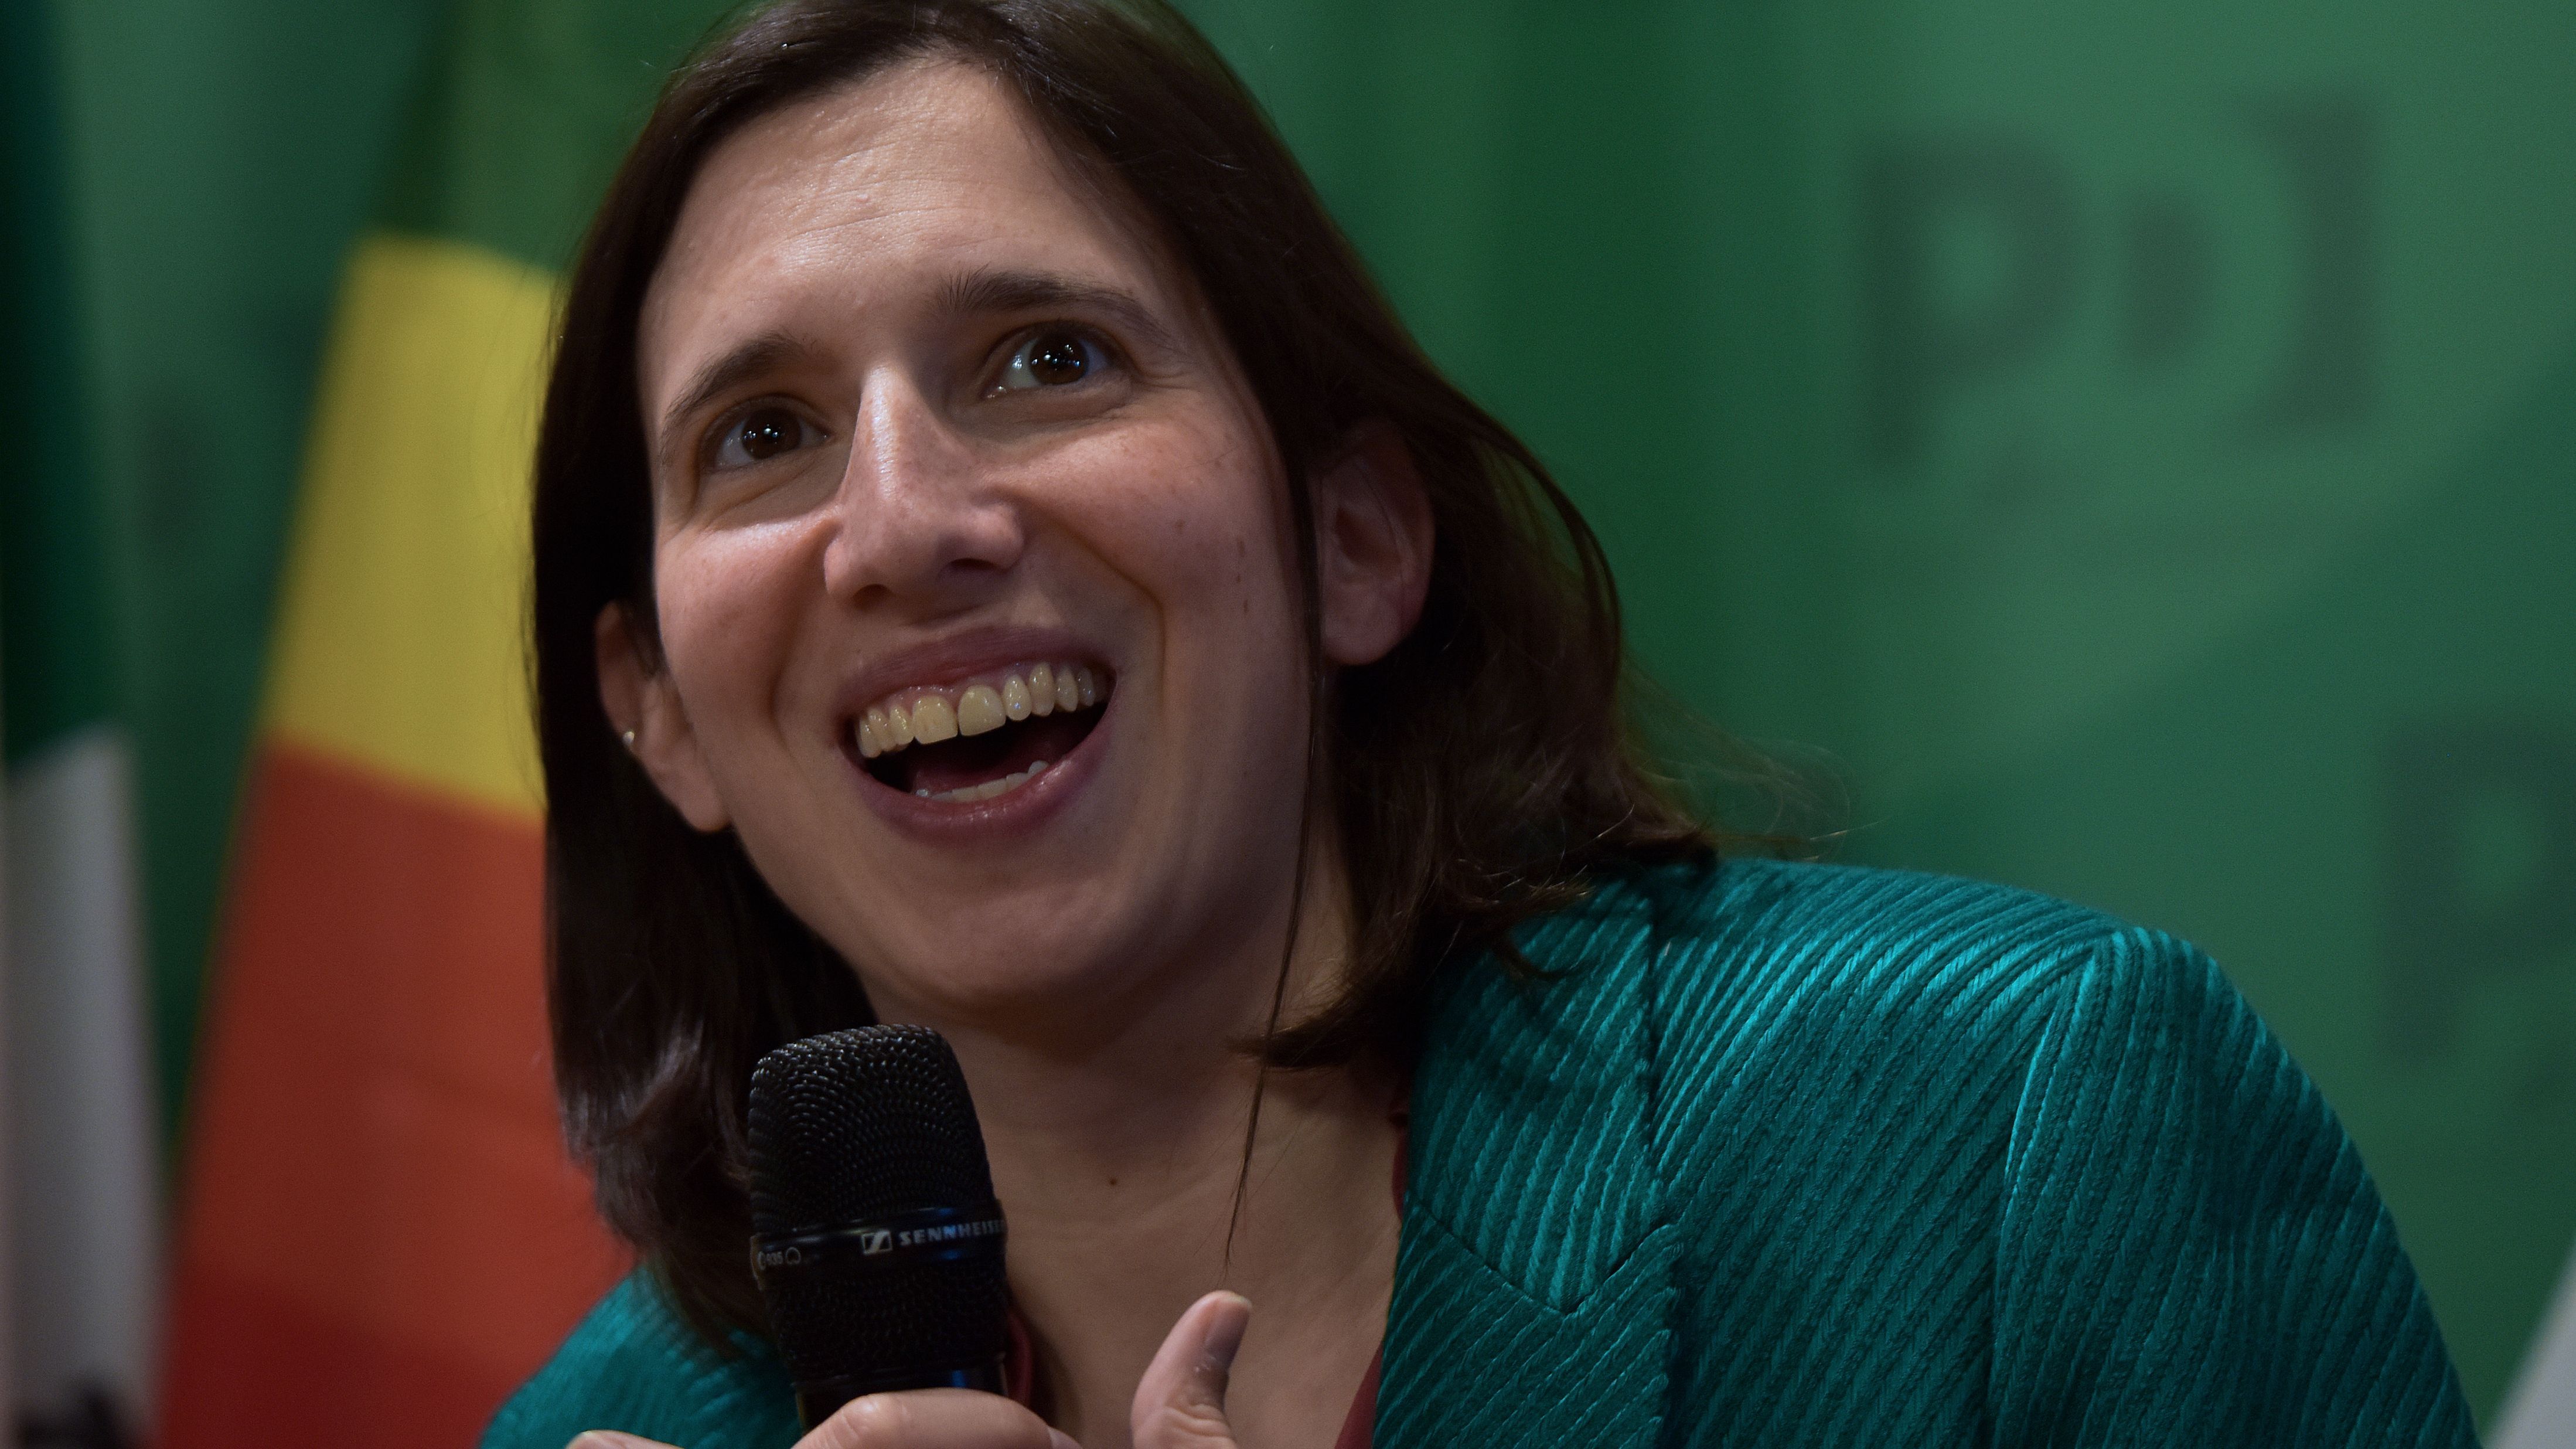 La nuova elezione di una leader donna dell’opposizione dal profilo decisamente di sinistra sta trasformando la scena politica italiana.